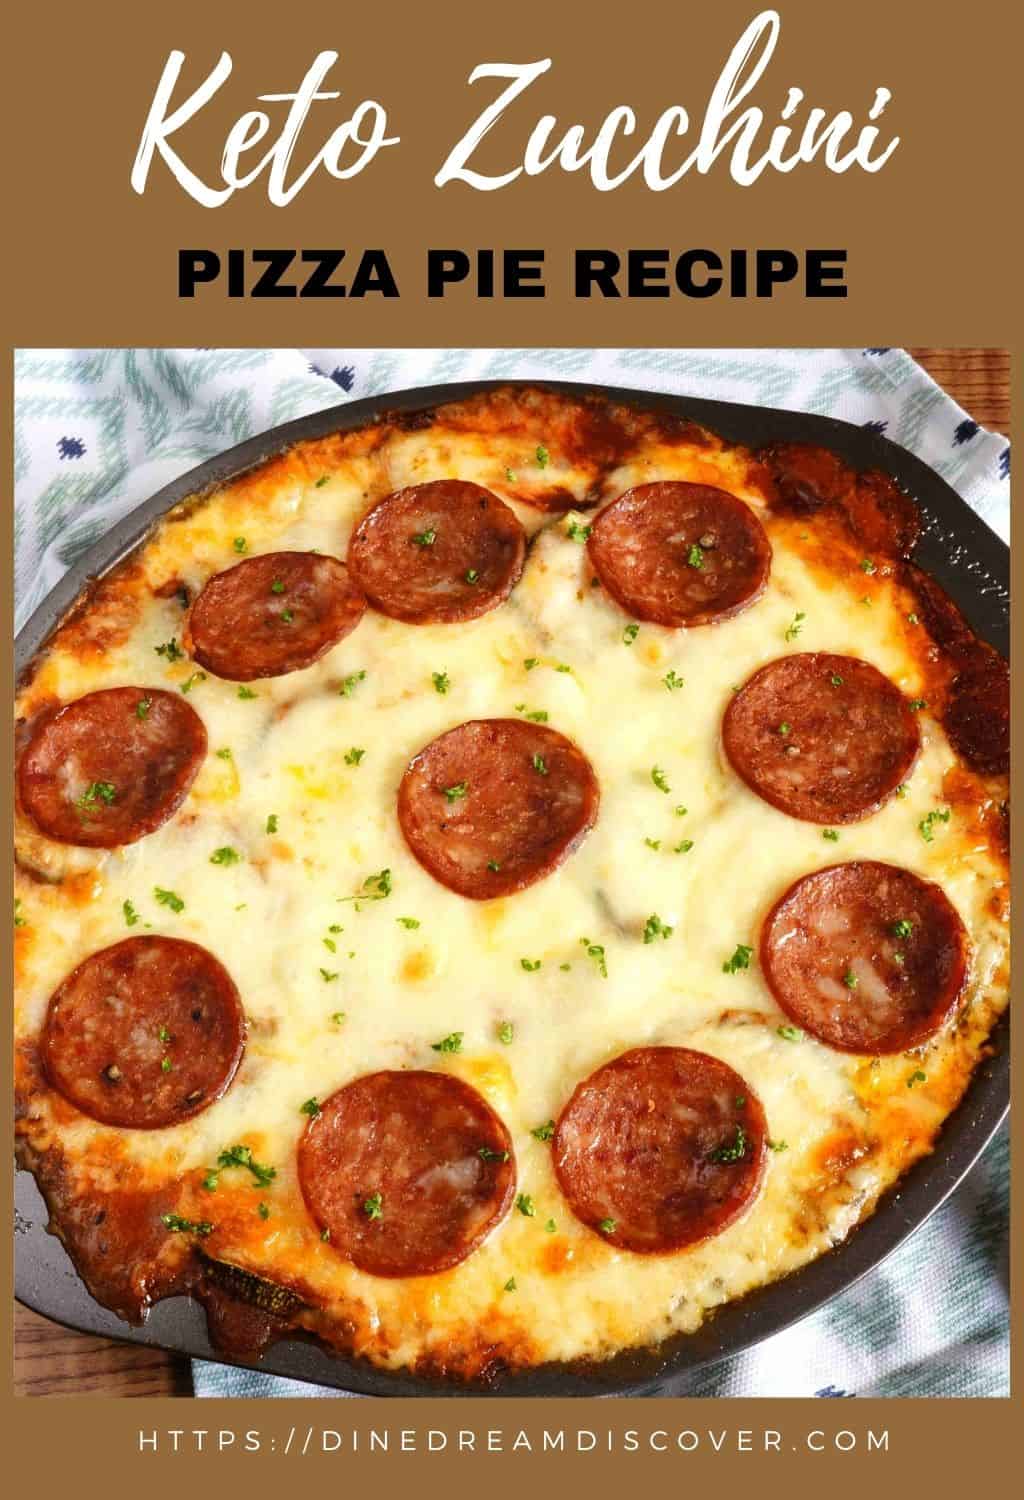 Keto Zucchini Pizza Pie Recipe